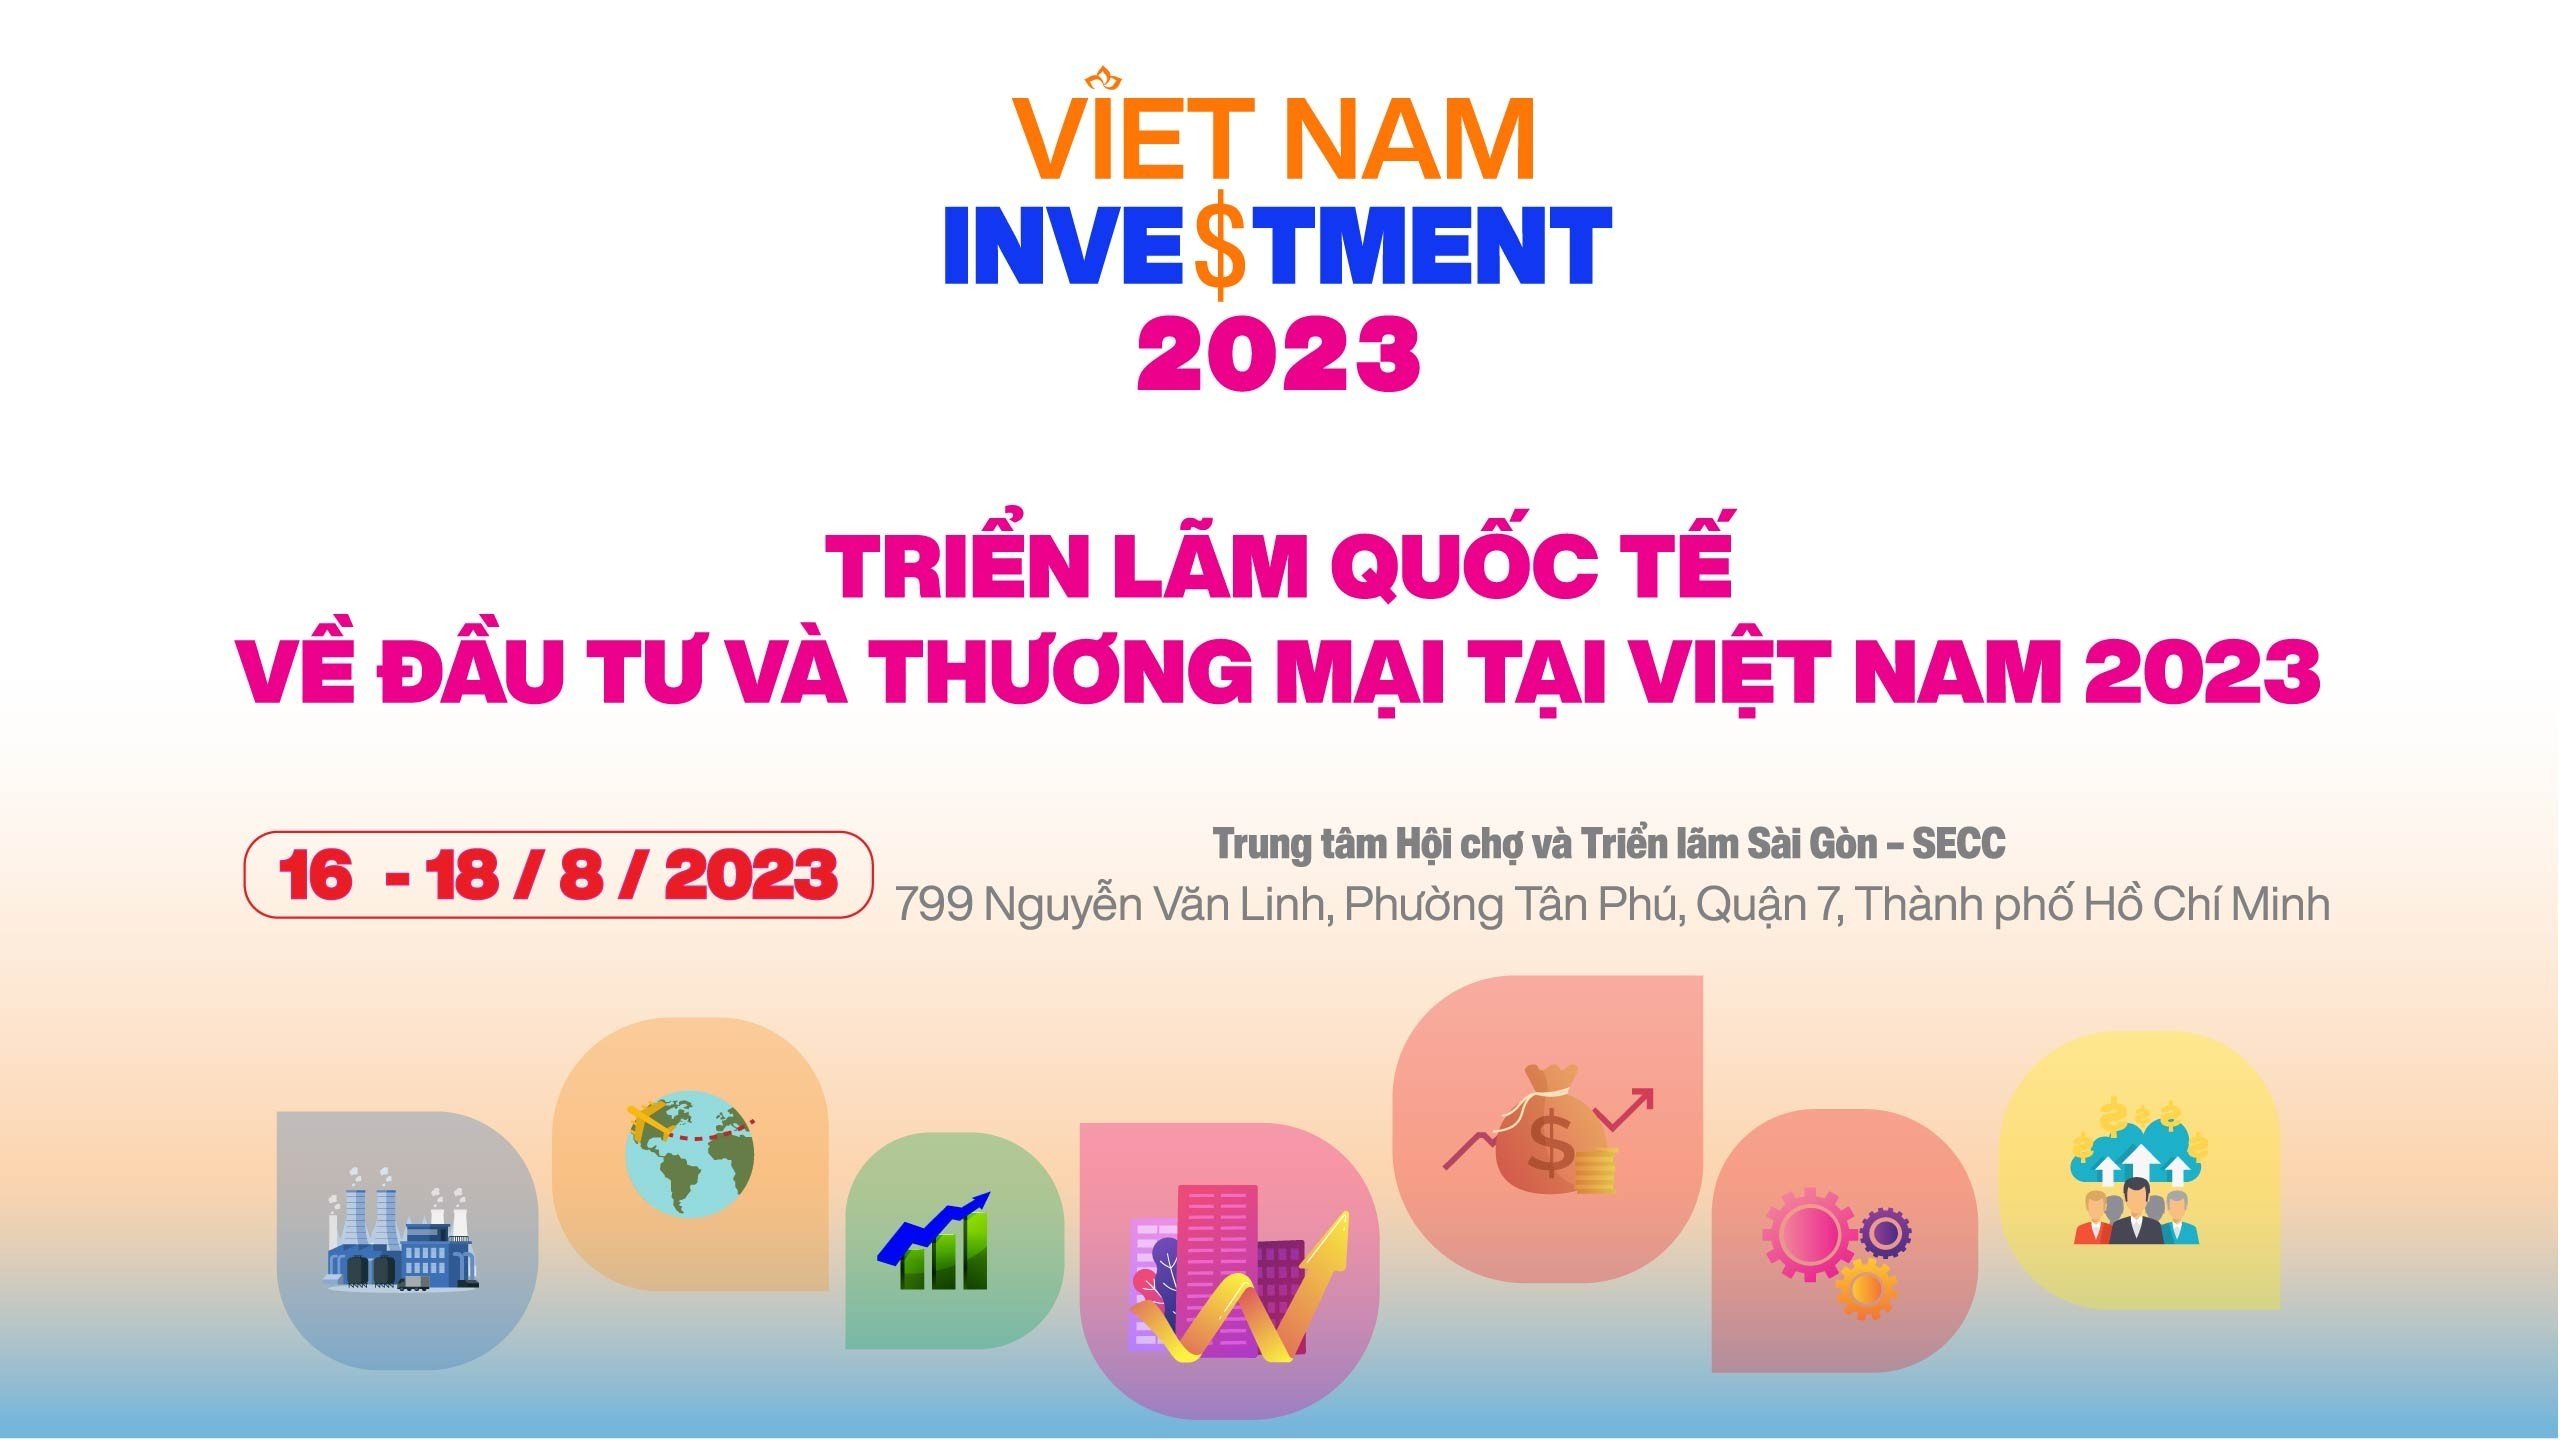 Vietnam Investment 2023 - Thi công gian hàng triển lãm Vietnam Investment.